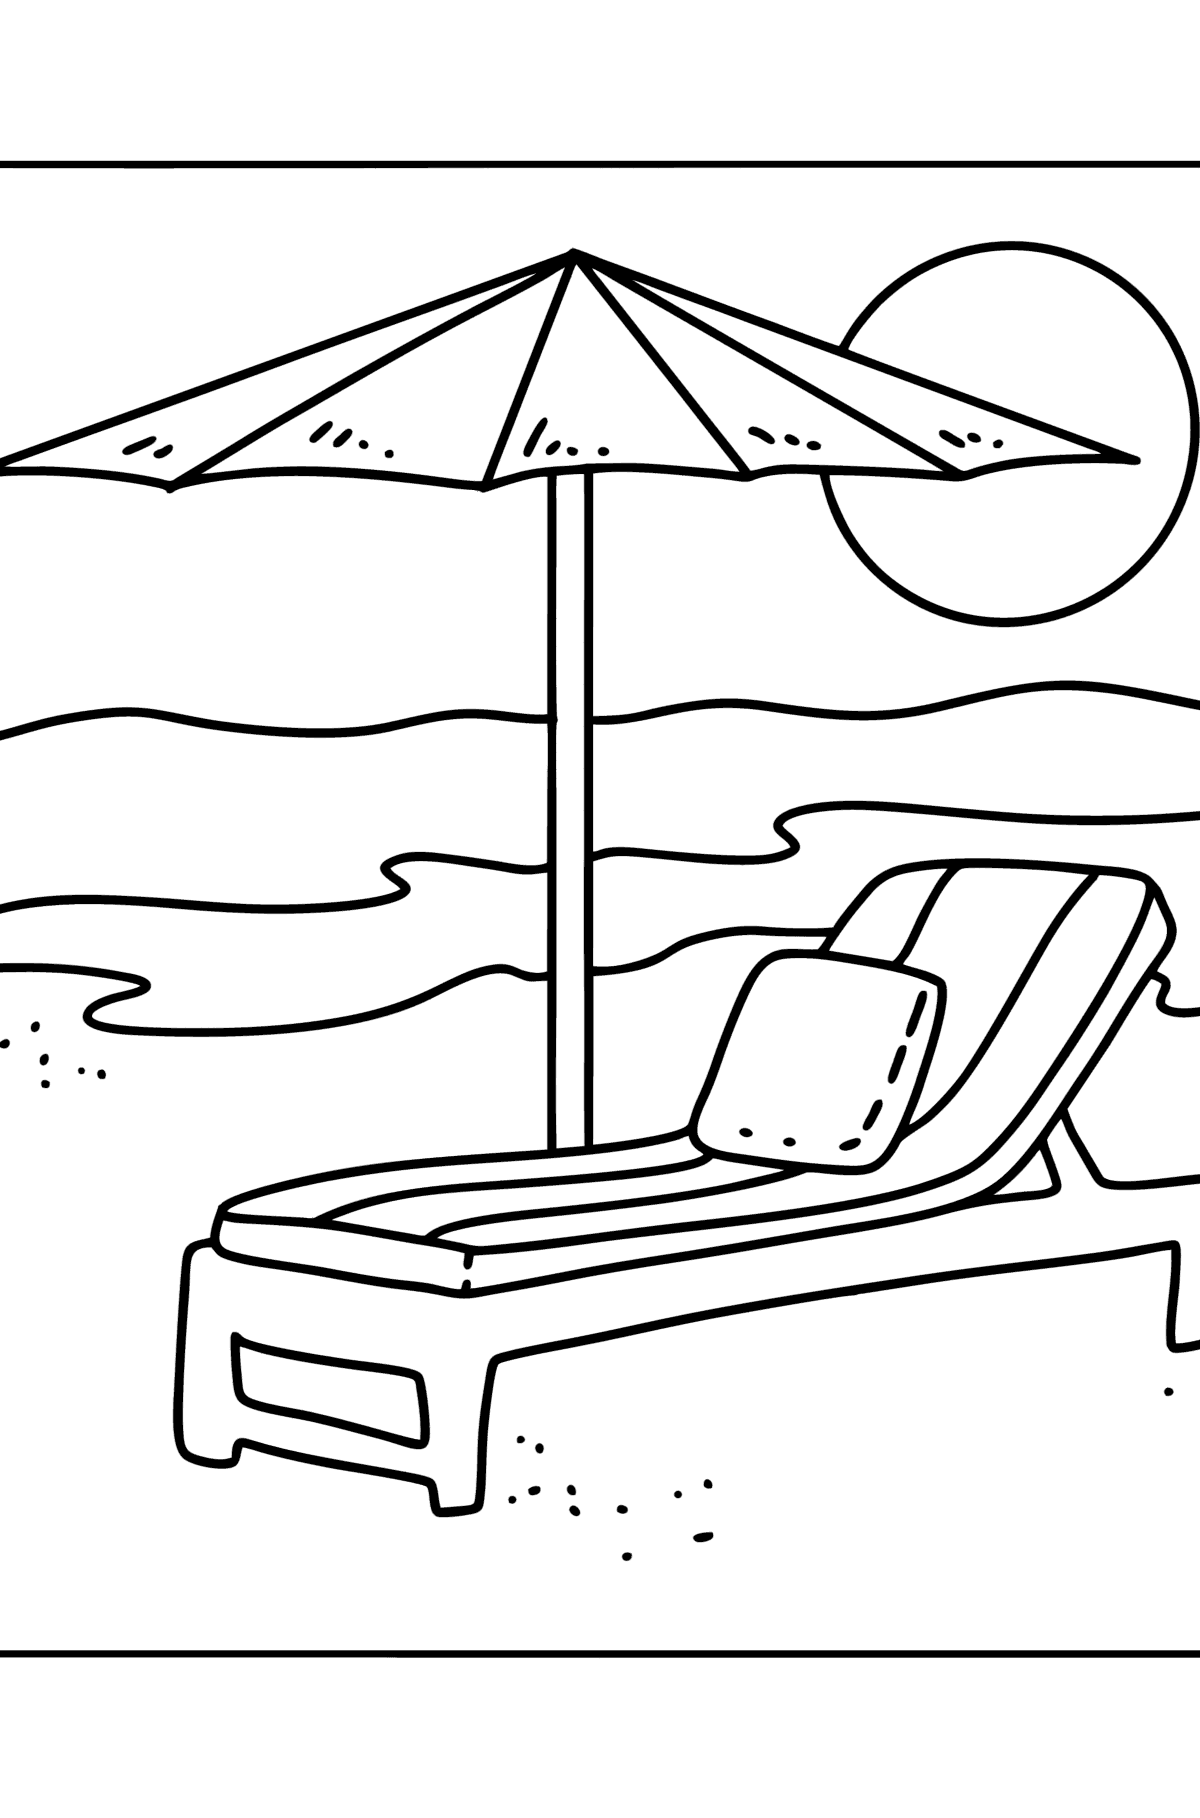 Boyama sayfası plaj şemsiyesi ve şezlong - Boyamalar çocuklar için